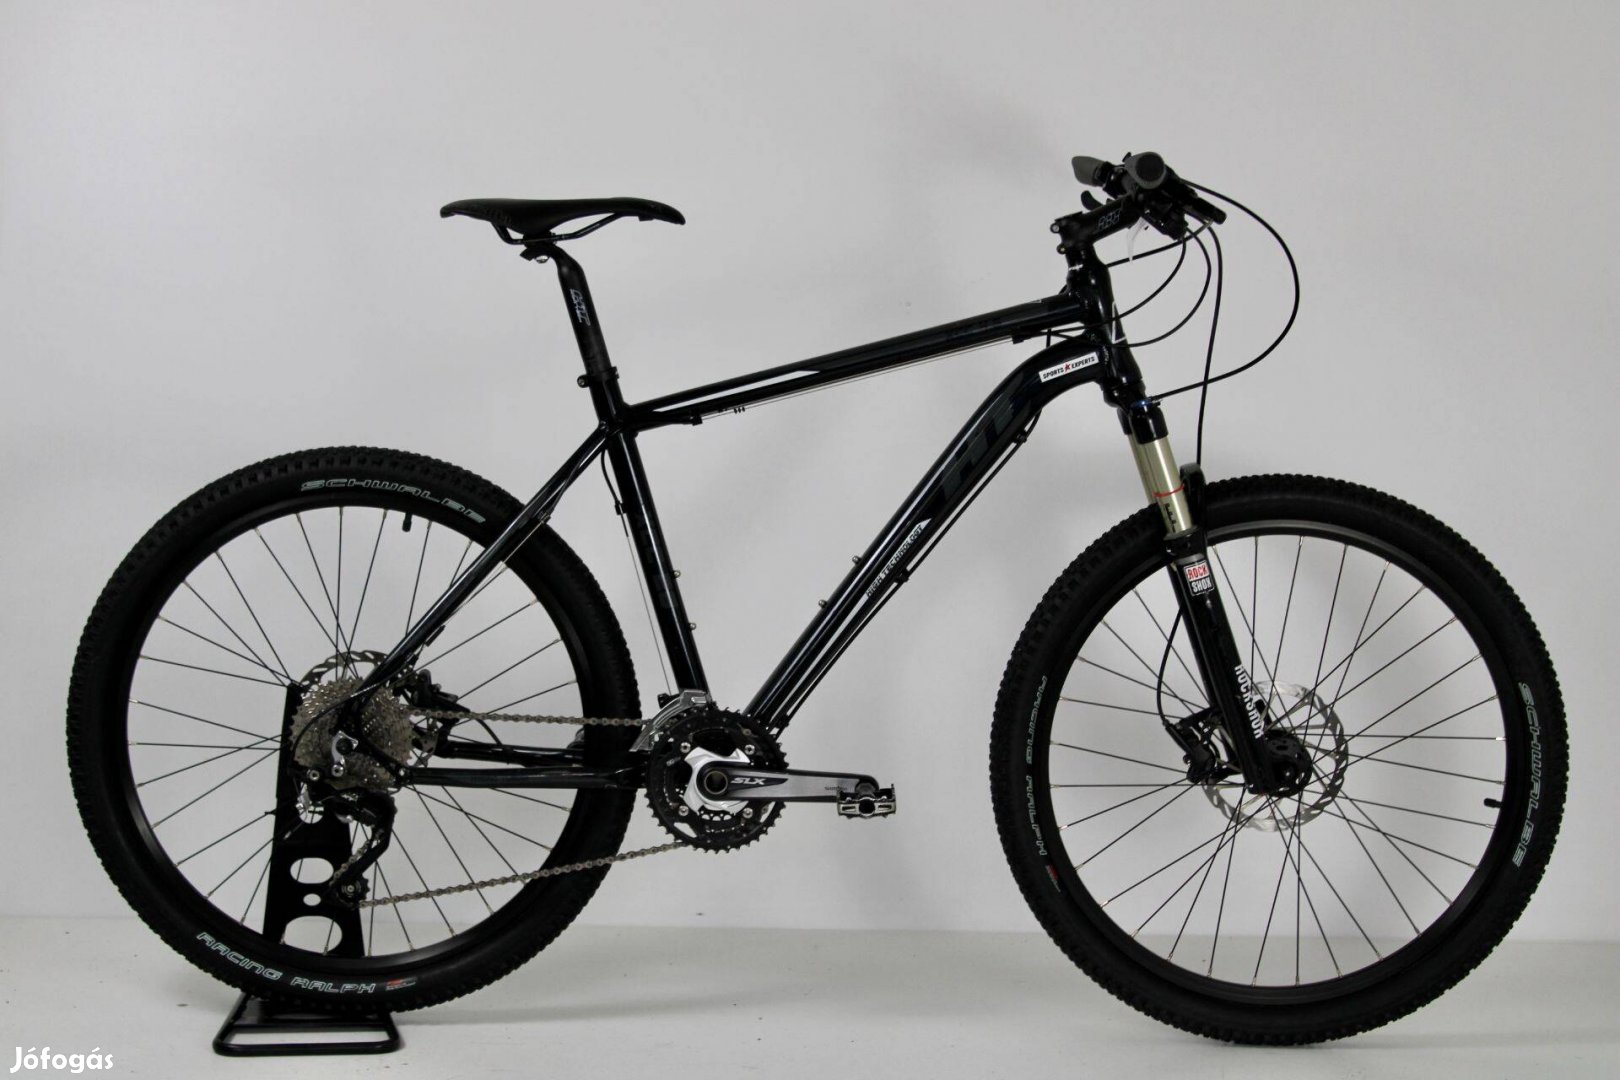 HT Xcc 4.5 kerékpár Üzletből, Garanciával